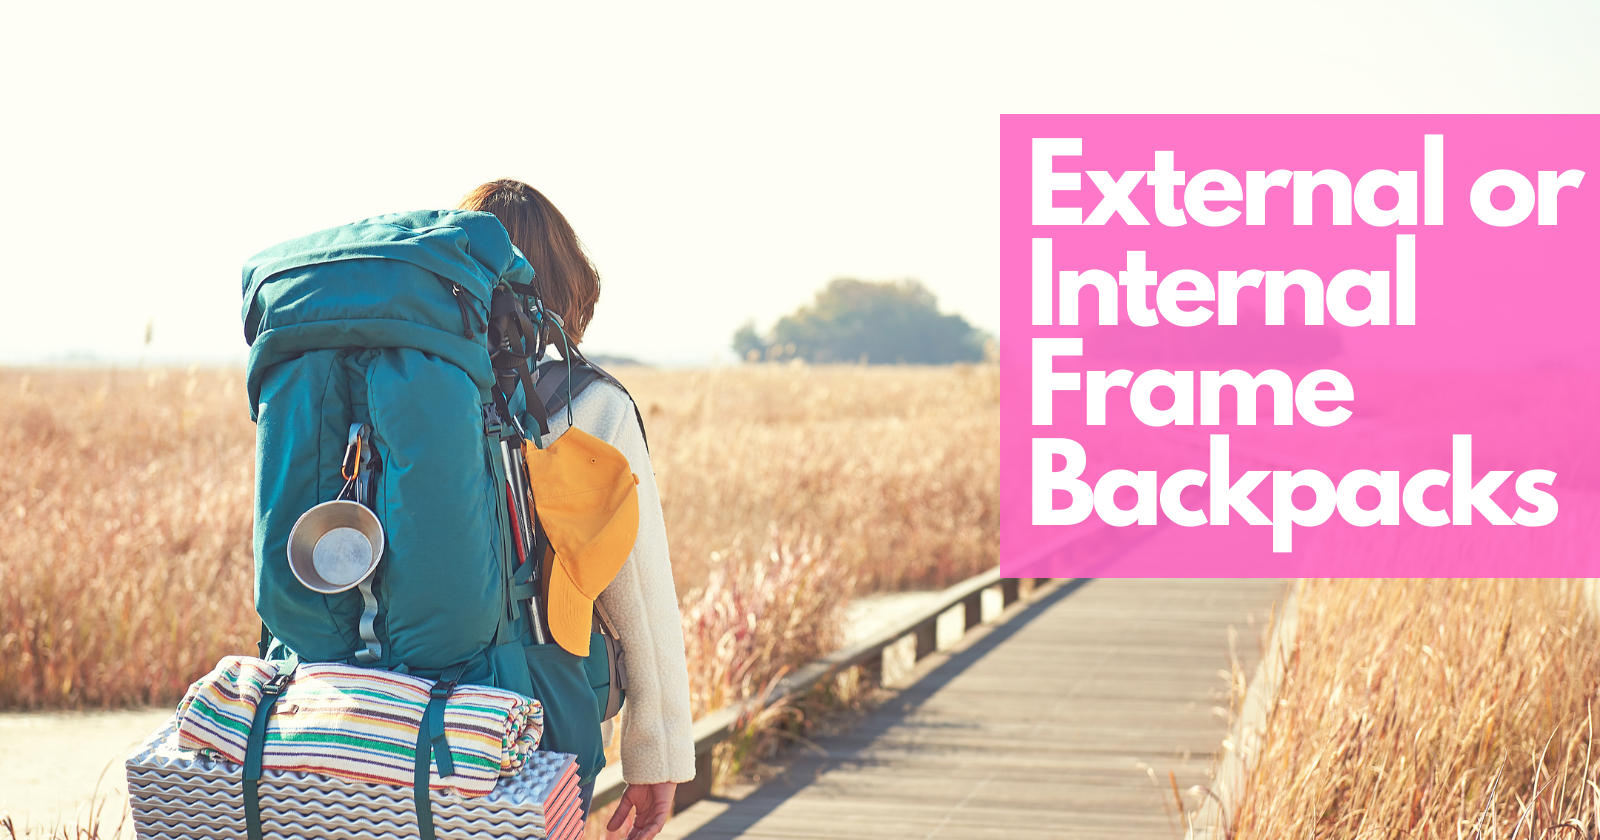 External or Internal Frame Backpacks